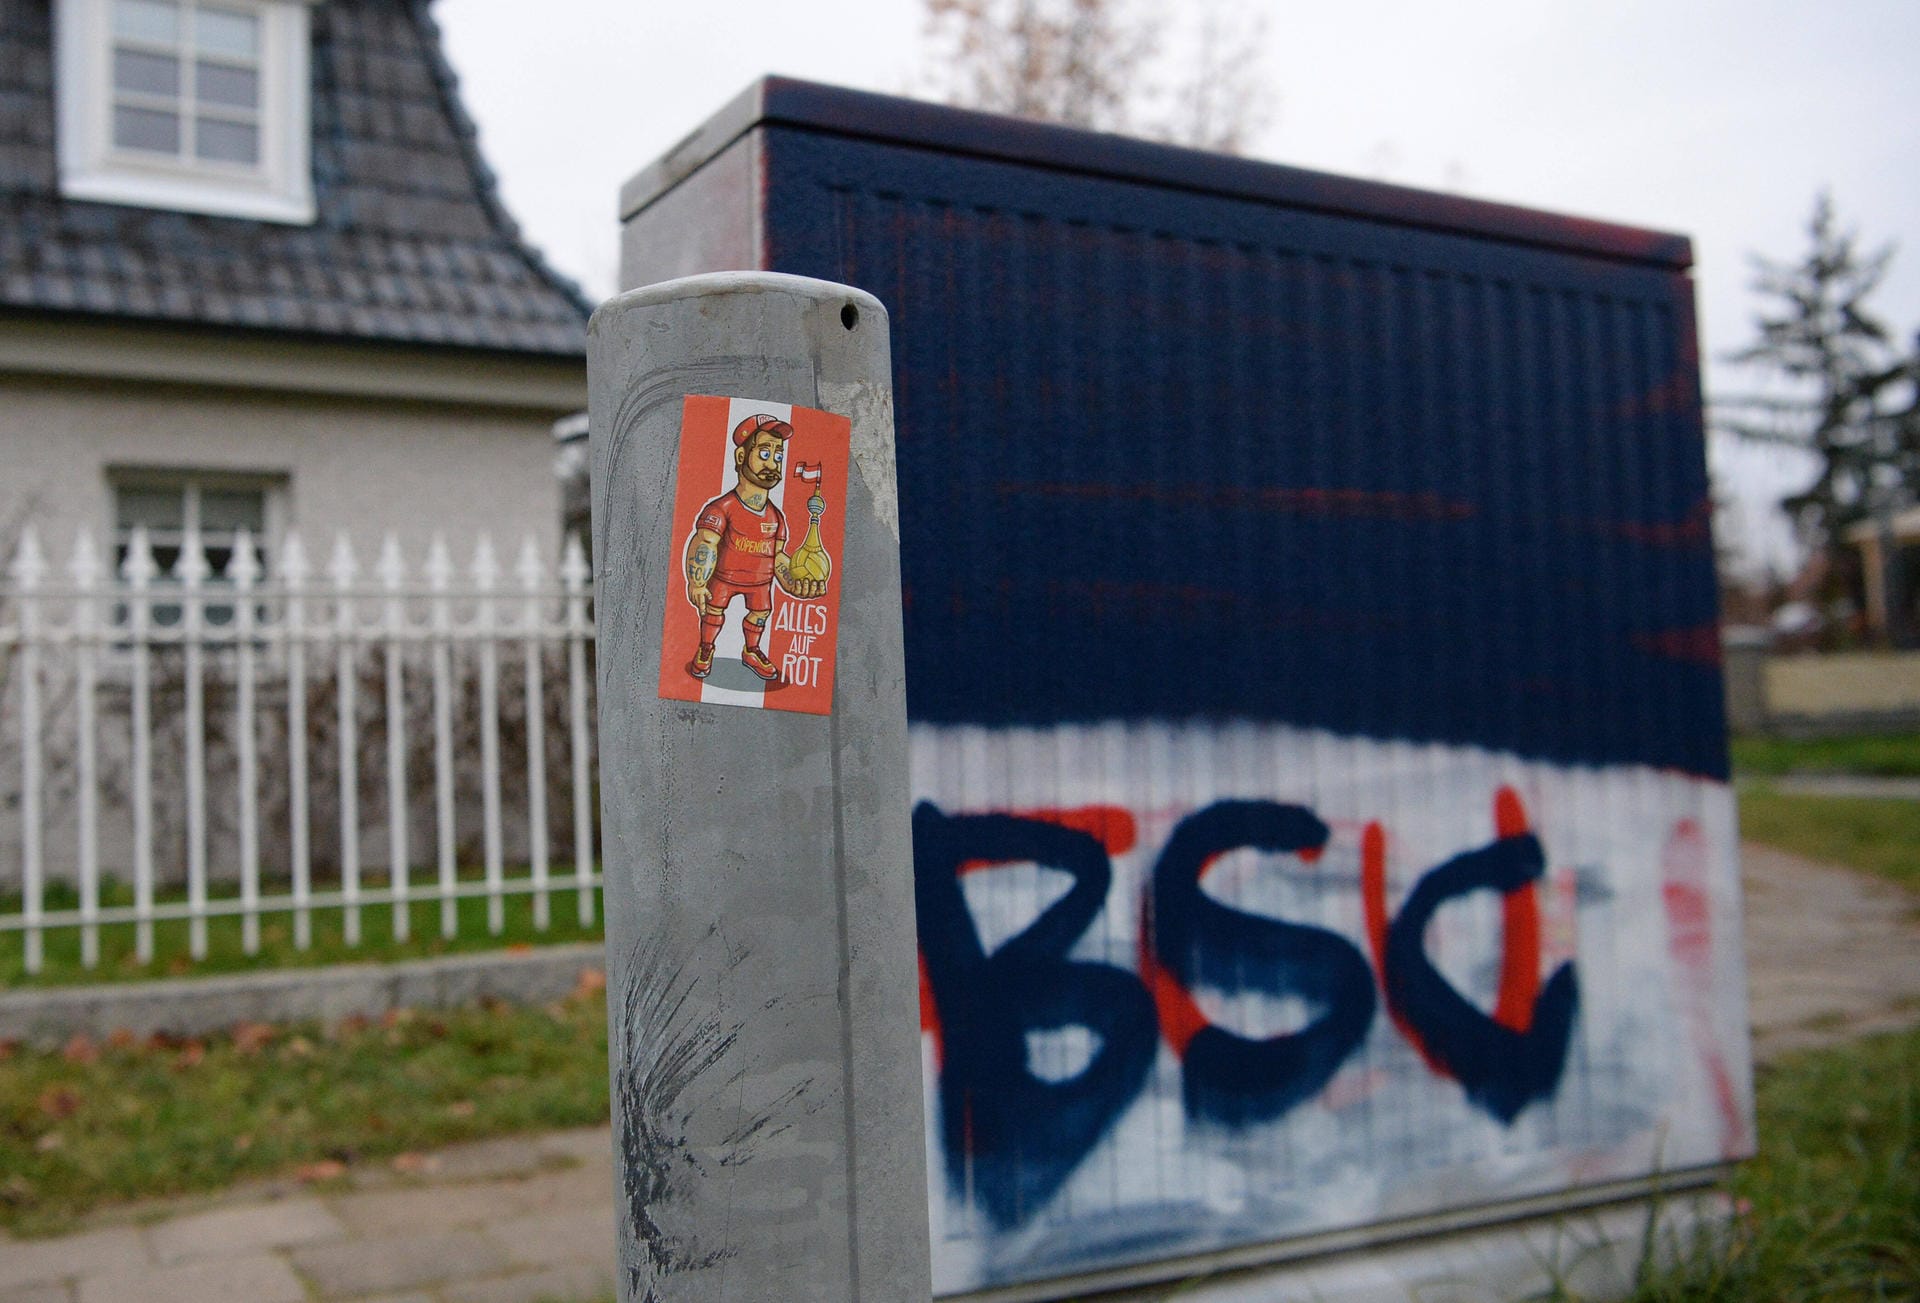 Ein Stromkasten ist in den Hertha-Farben eingefärbt – auf einem Straßenpoller klebt ein Union-Sticker: Am 4. Dezember treffen die beiden Stadtrivalen Hertha BSC und Union Berlin in der Bundesliga aufeinander.